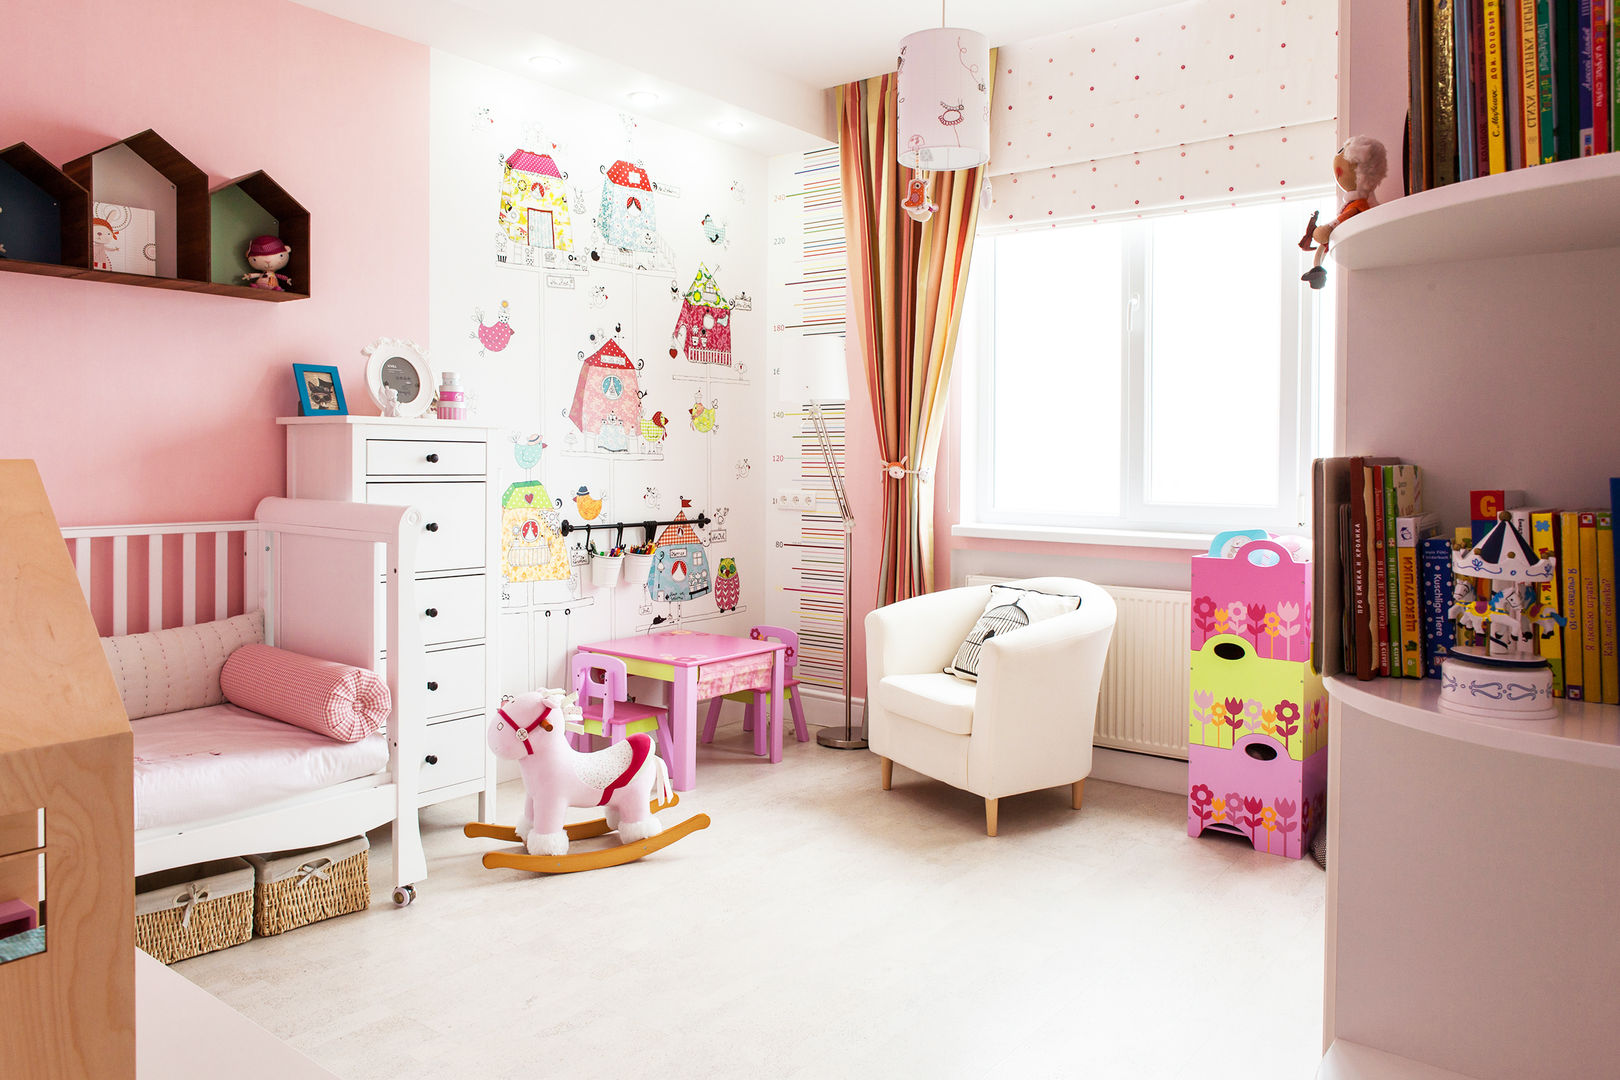 Детская для девочки Nika Loiko Design Детская комнатa в скандинавском стиле